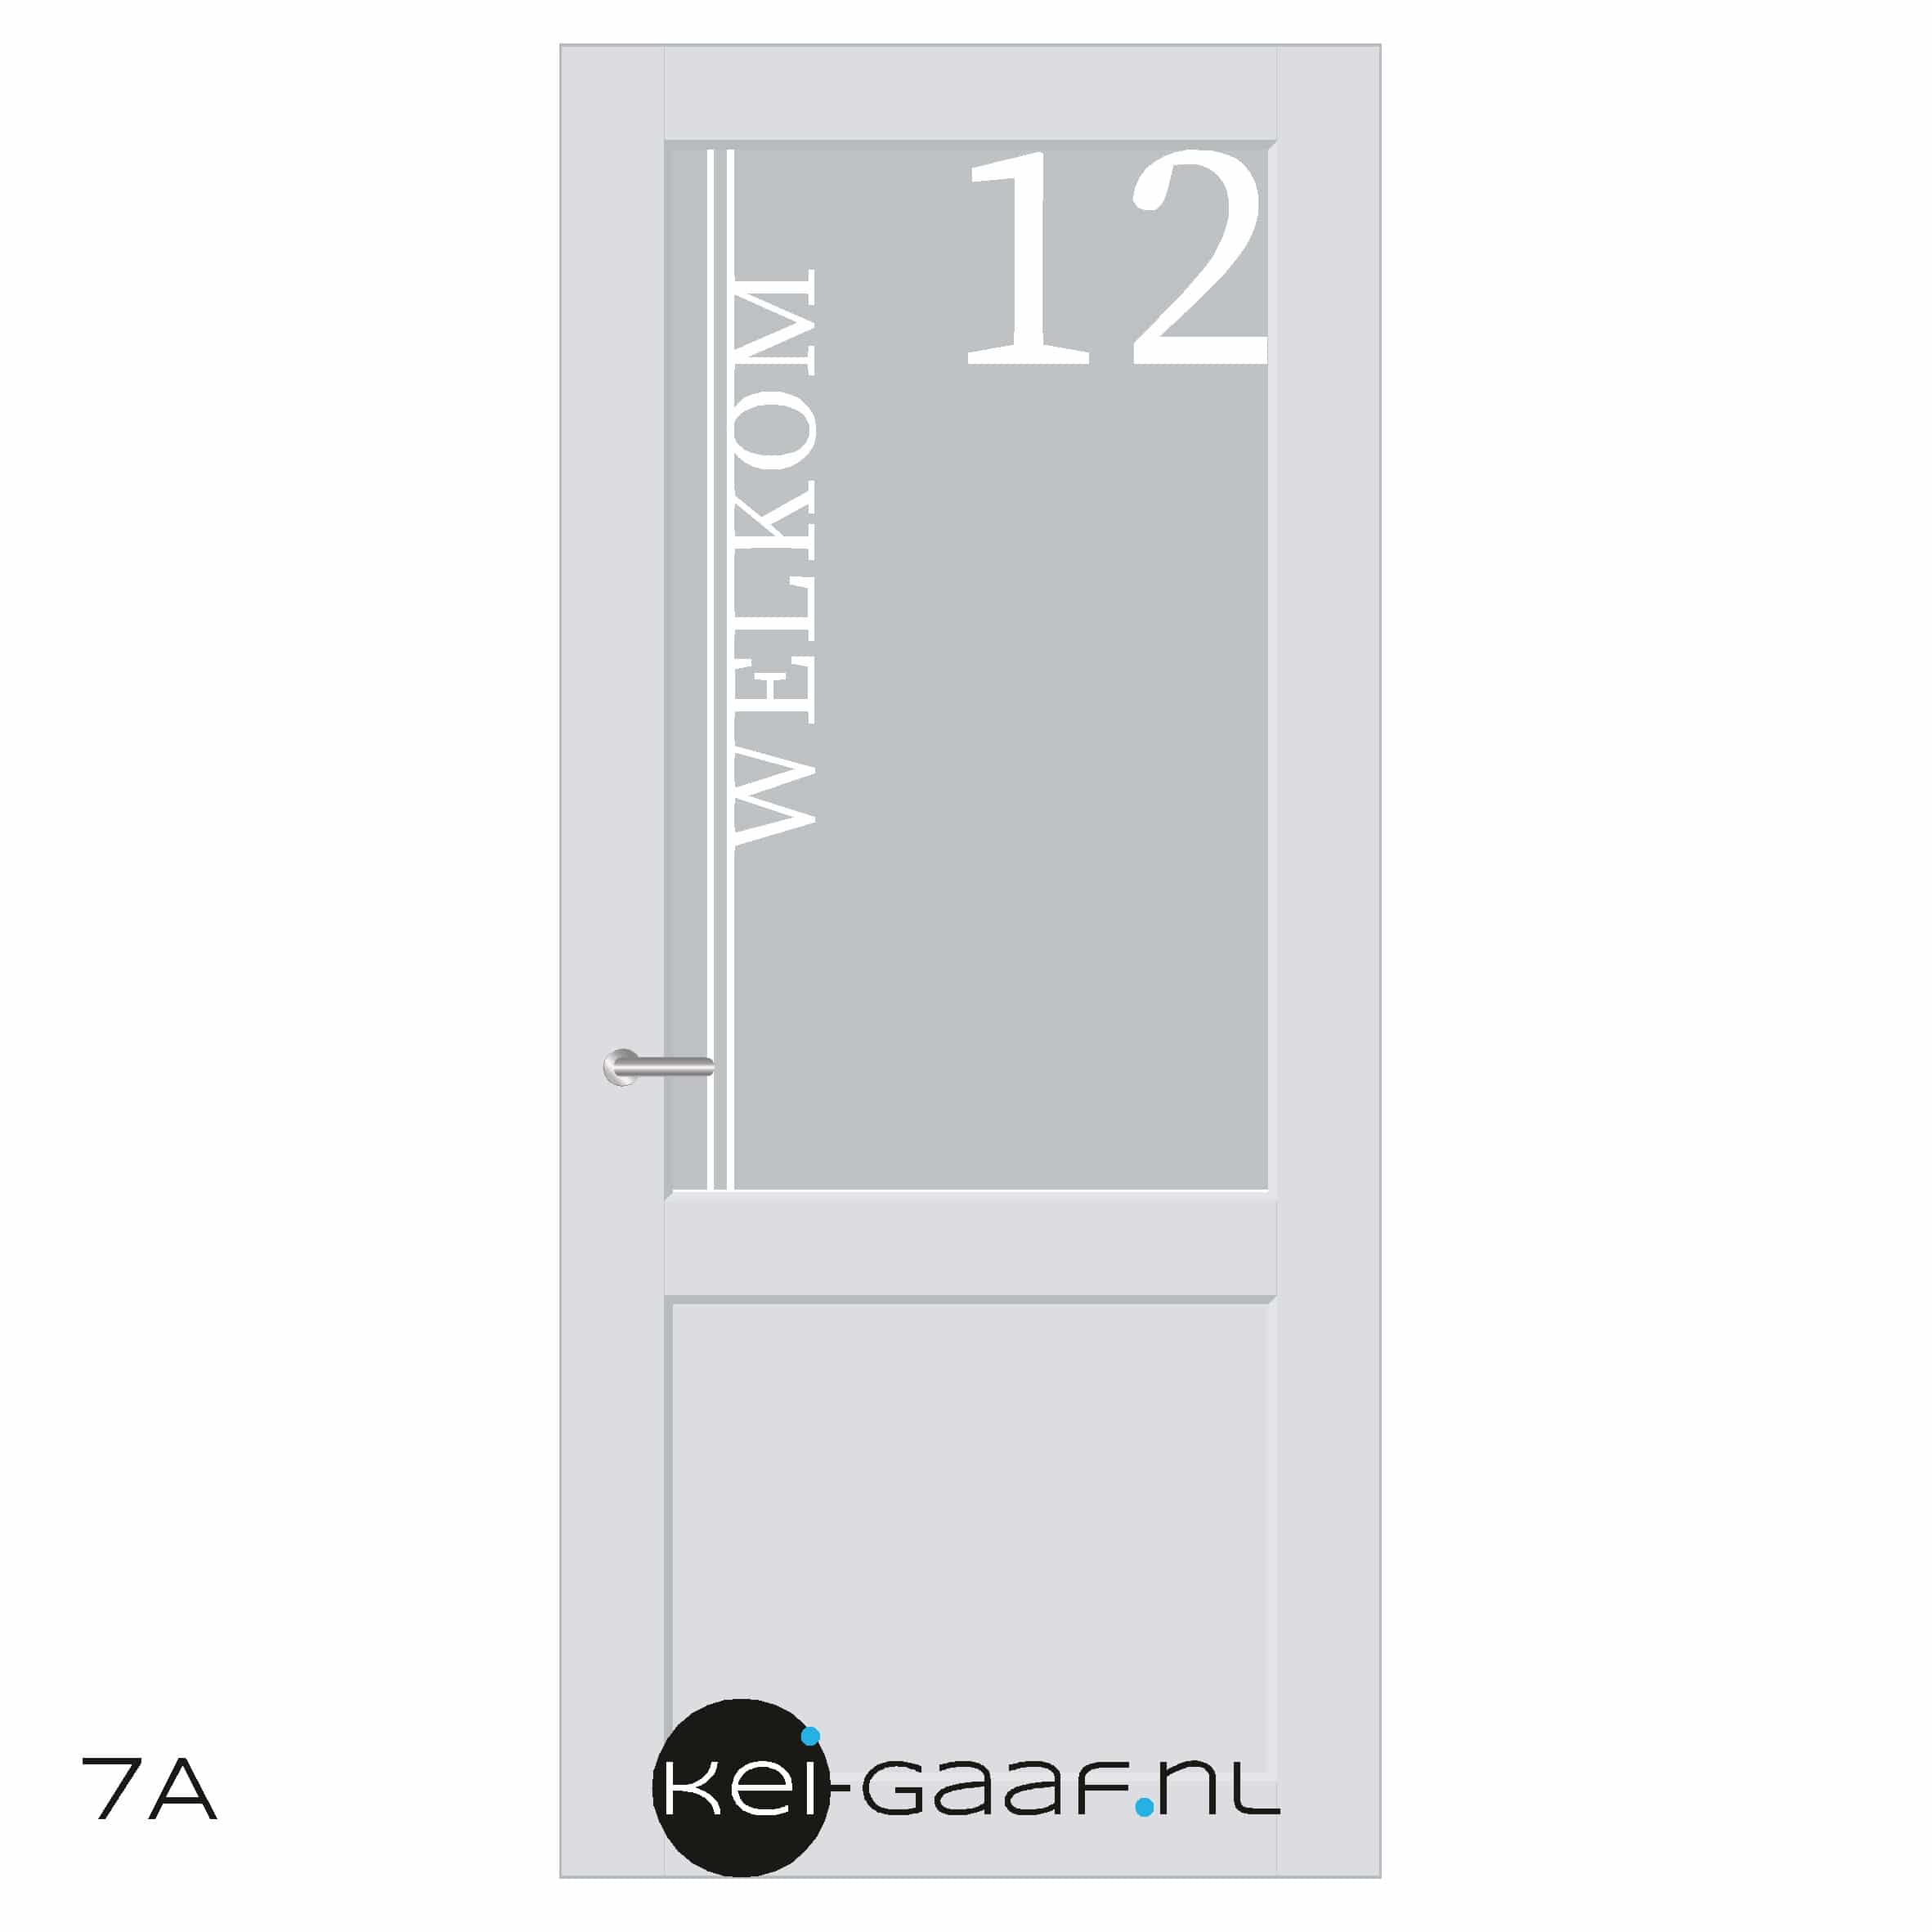 exotisch condoom Mevrouw Raamfolie met naam, huisnummer en welkom 7A - Kei-Gaaf